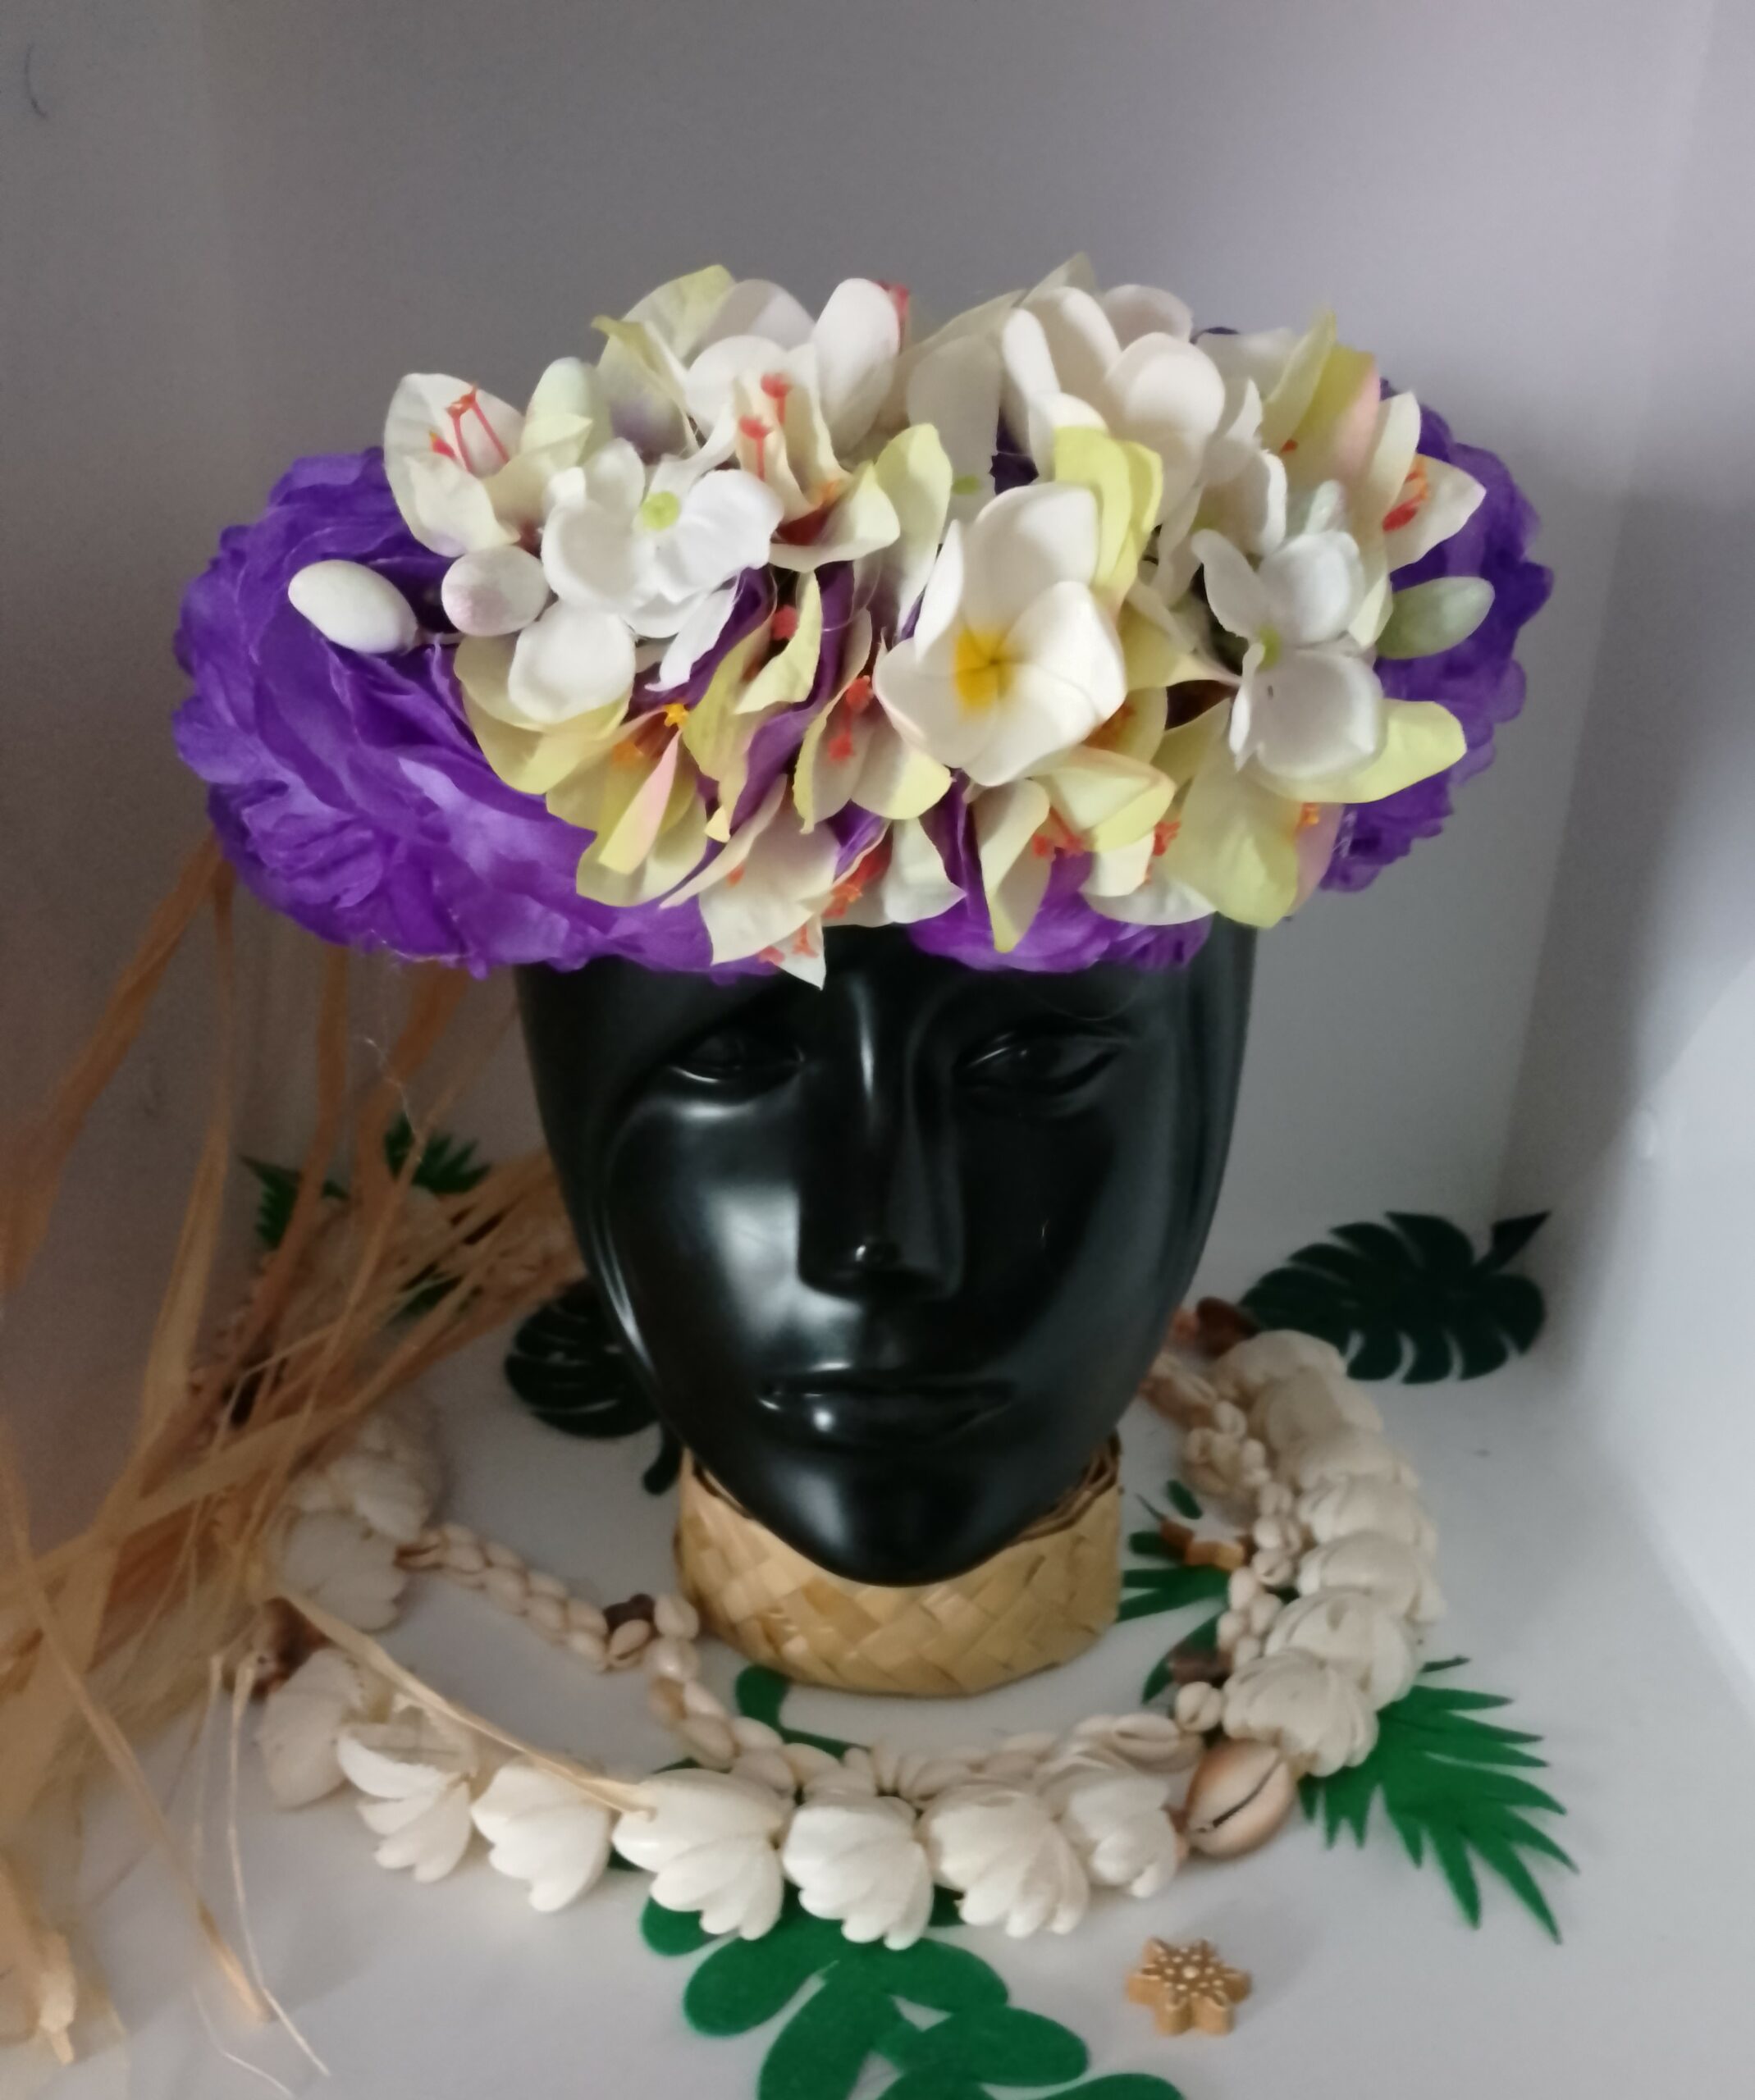 couronne florale de tête violette bougainvilliers verts frangipaniers blancs by Vaite e.Tiare créations